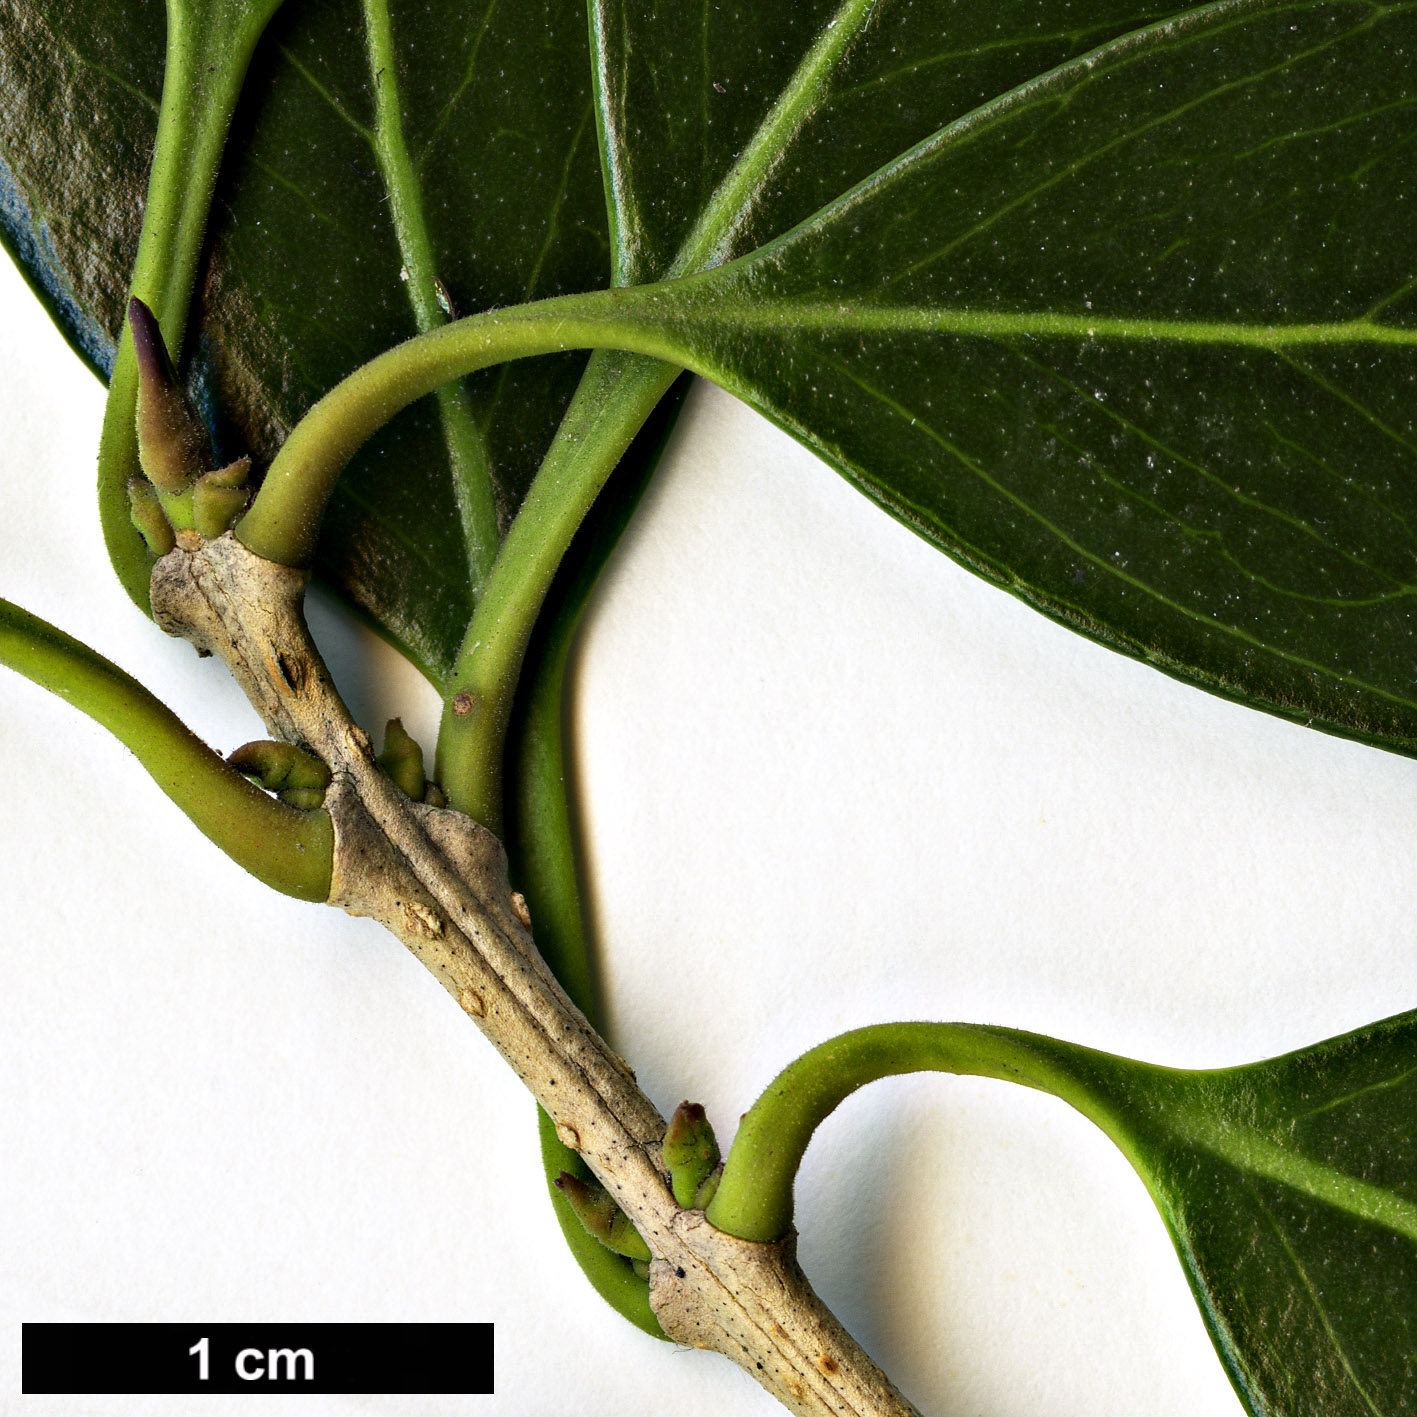 High resolution image: Family: Oleaceae - Genus: Osmanthus - Taxon: heterophyllus